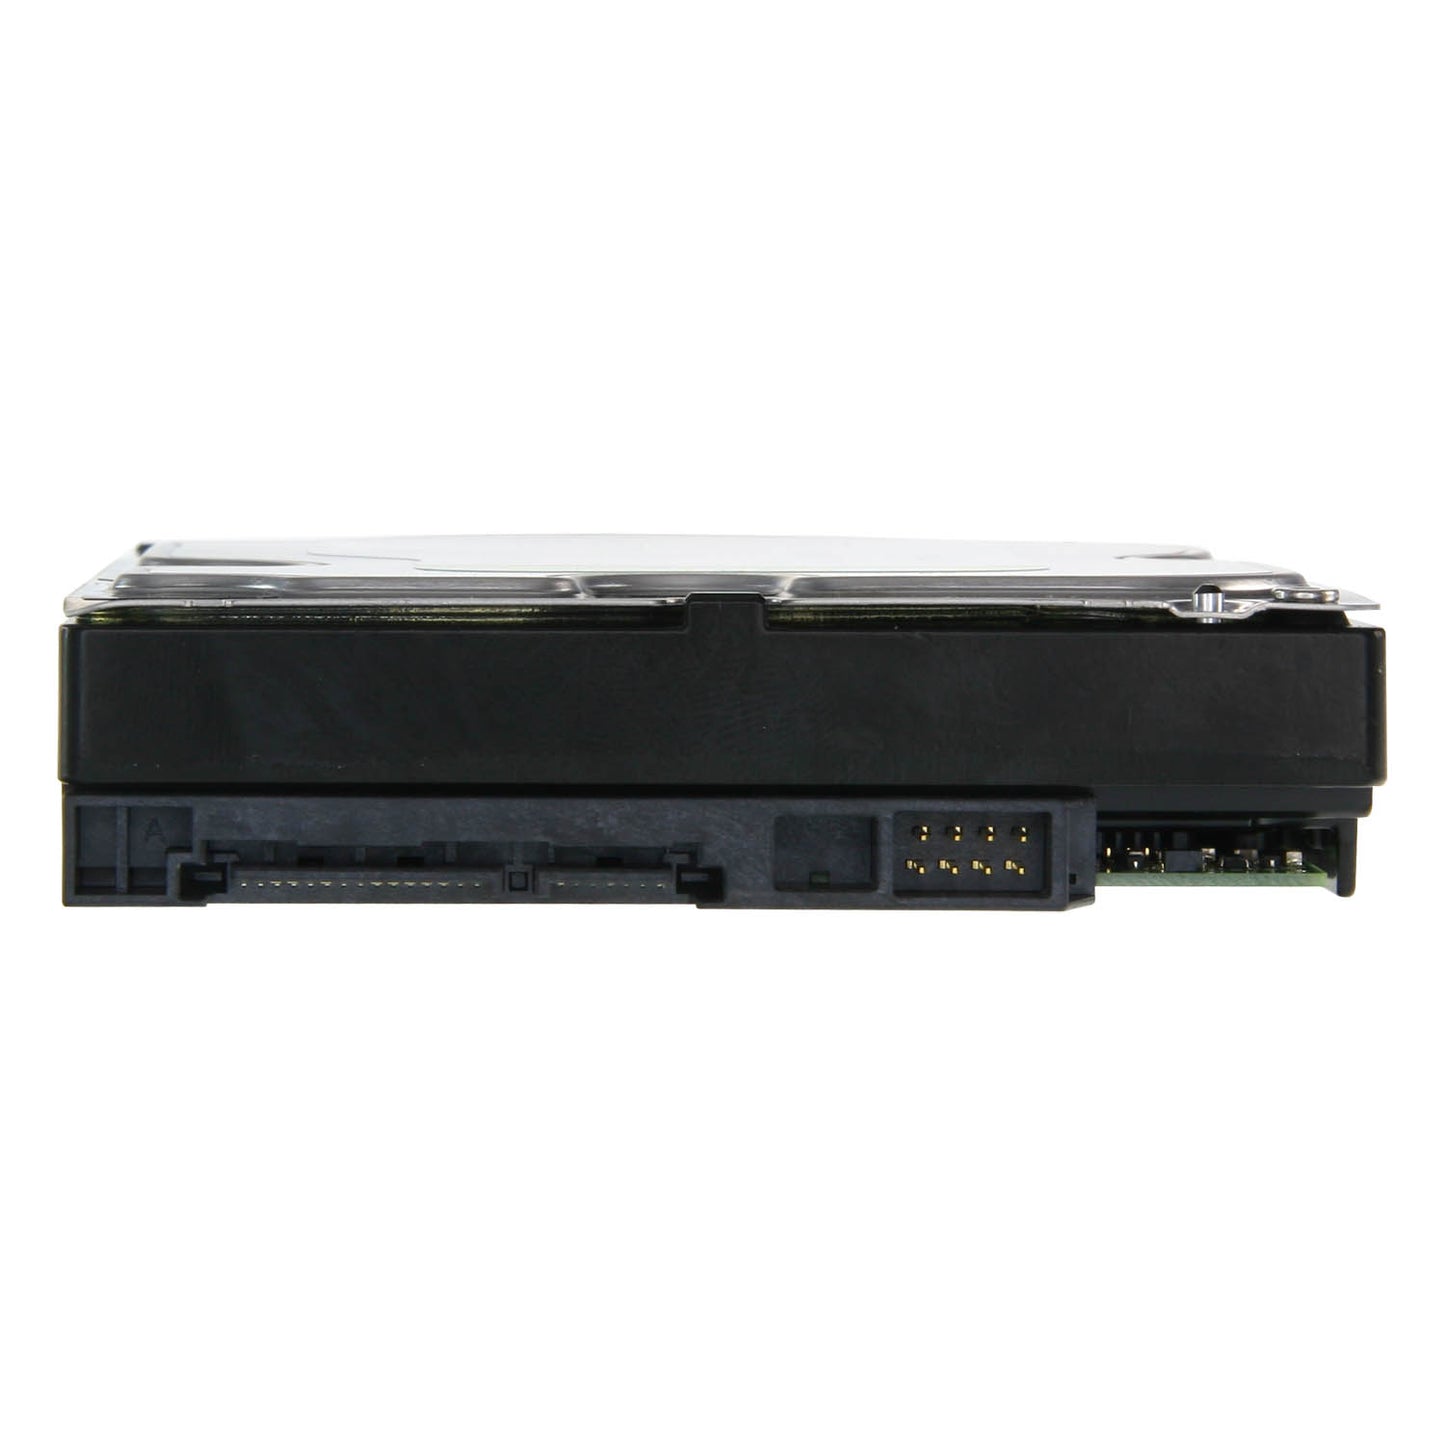 Hard Disk - Capacità 1 TB - Interfaccia SATA 6 GB/s - Modello WD10PURX - Speciale per Videoregistratori - Da solo o installato su DVR